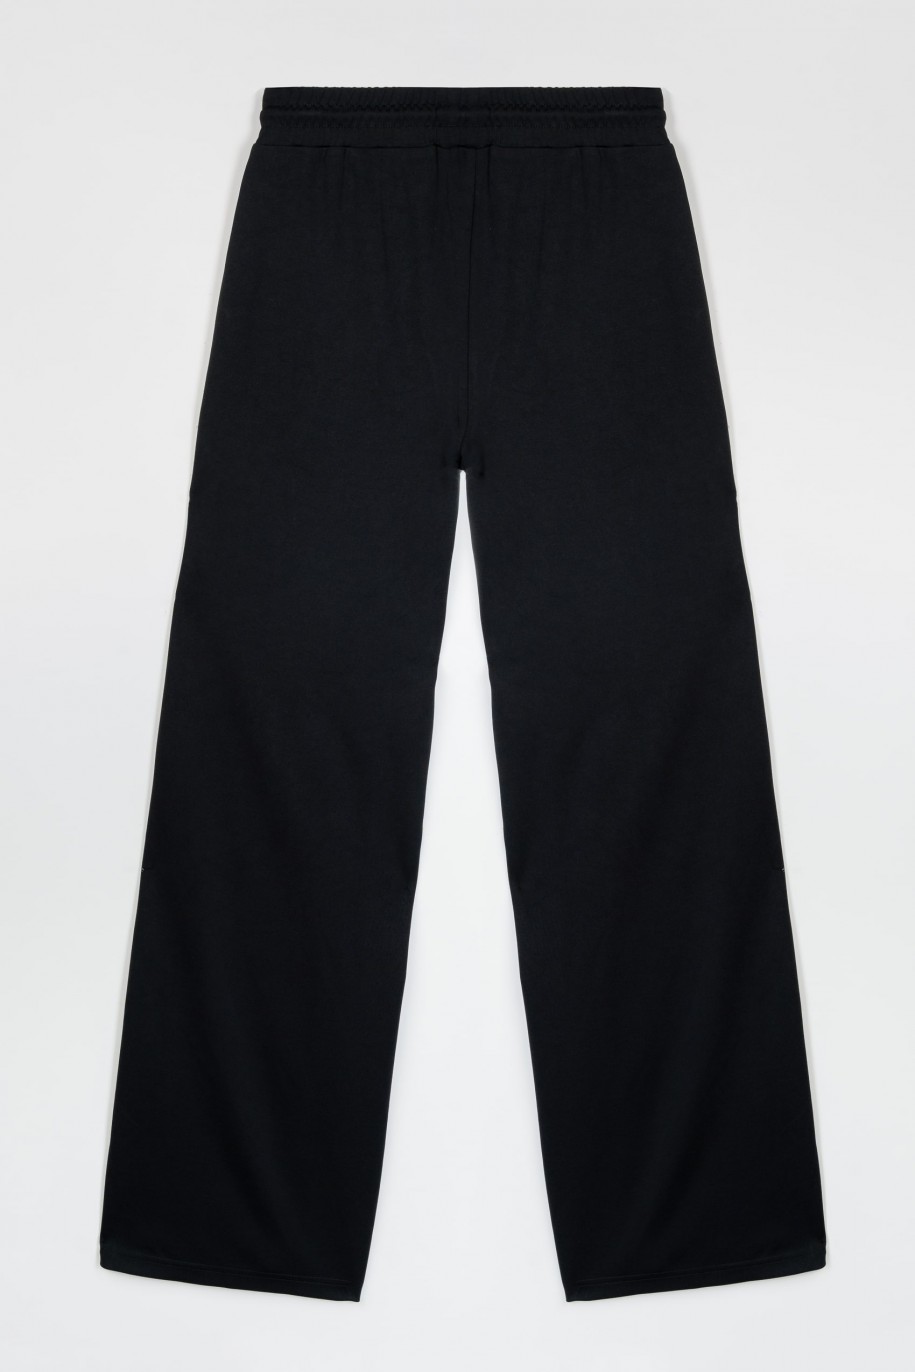 Czarne szerokie spodnie z nogawkami zapinanymi na napy - 47413